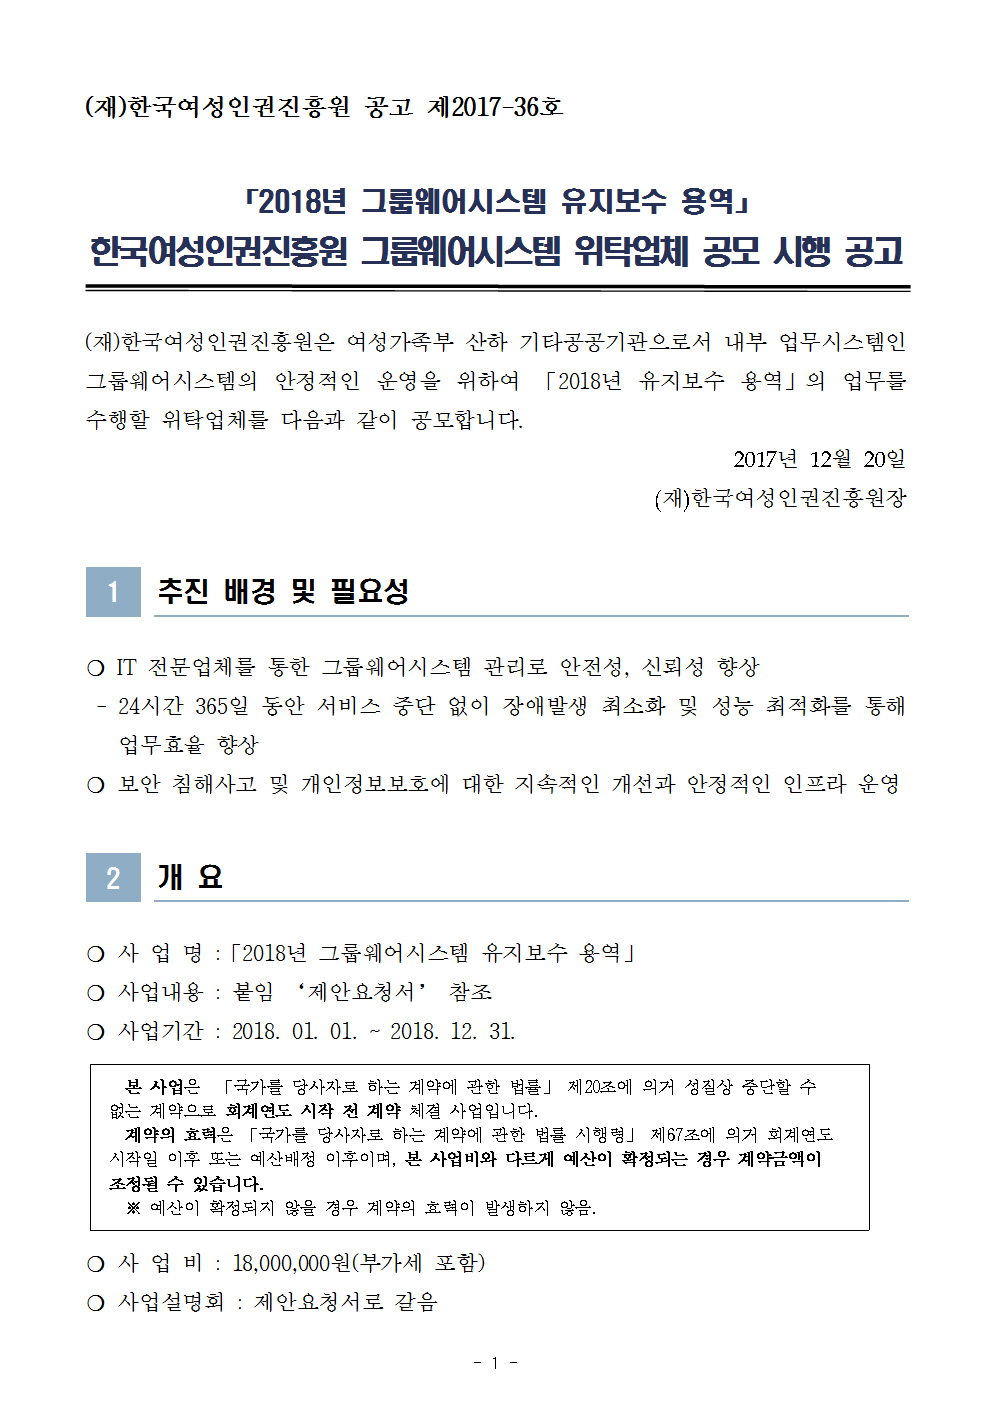 한국여성인권진흥원 2018년도 그룹웨어시스템 유지보수 공모 시행 공고문 1page.jpg